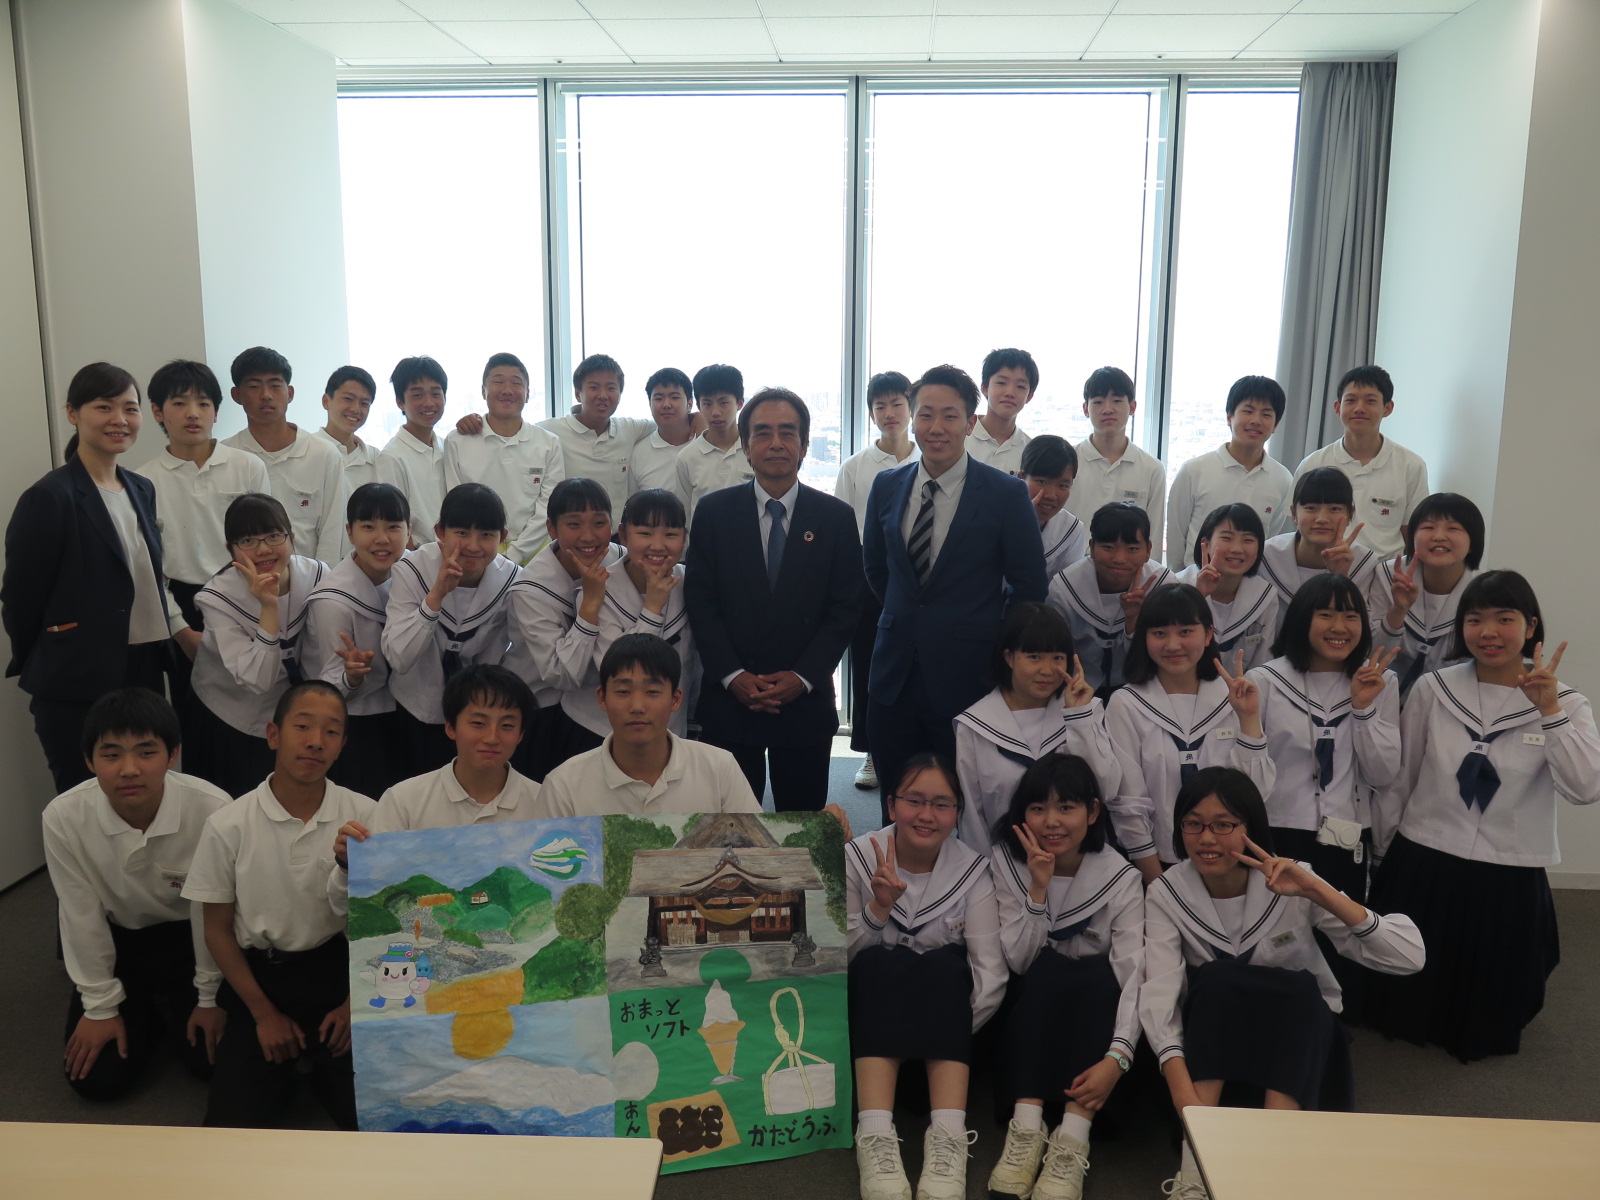 石川県白山市立松任中学校の皆さんが<br> 「松任の魅力」を伝えにハルカス大学へ来てくれました。<br>